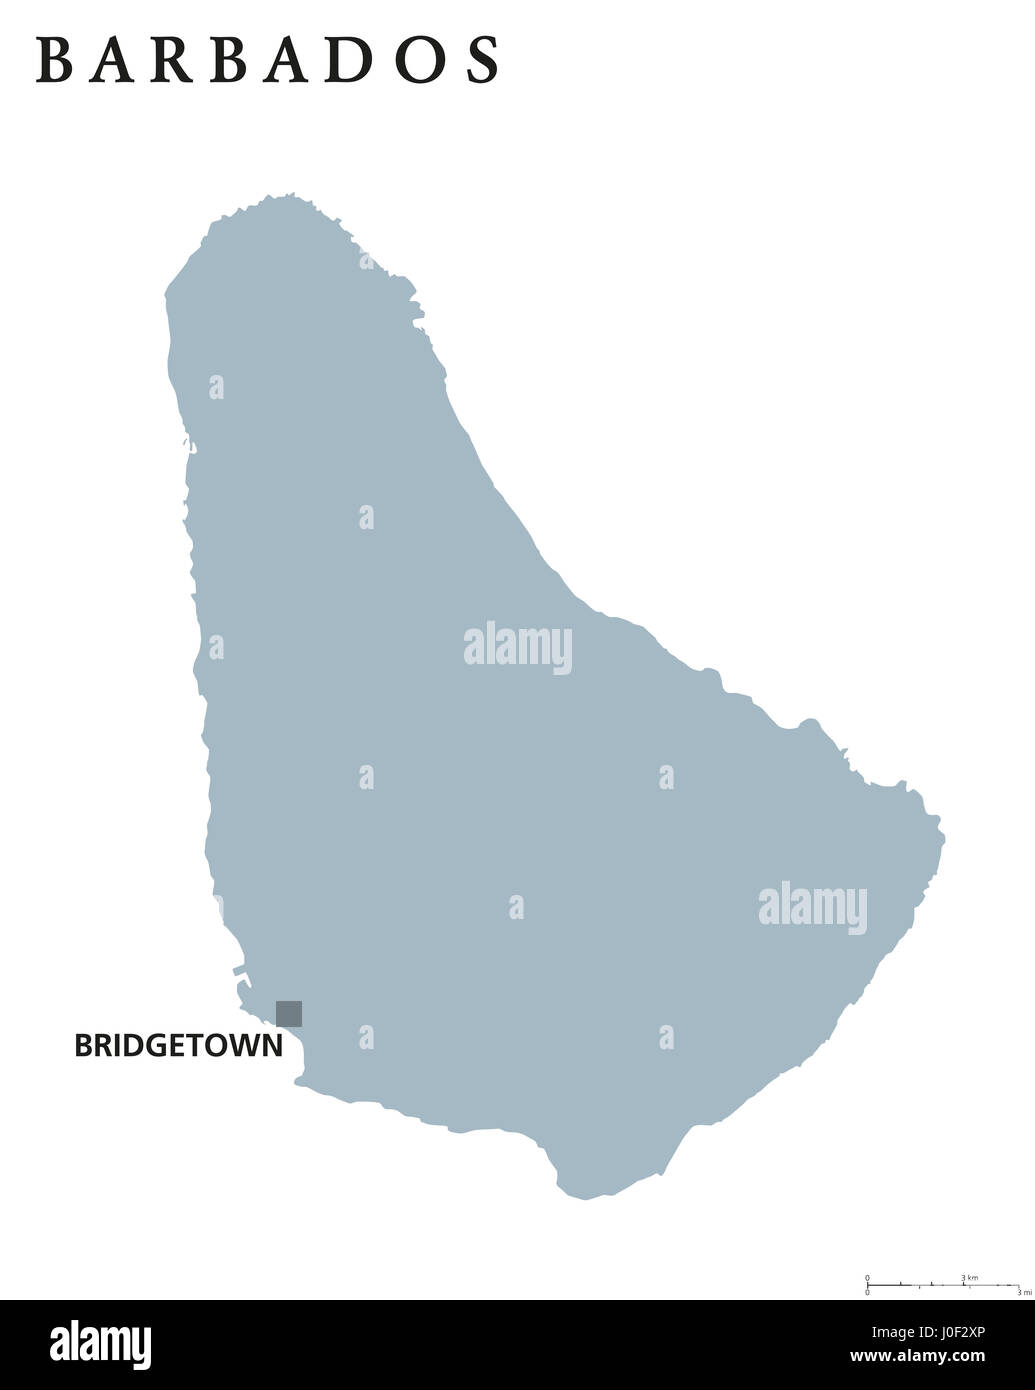 Barbados mapa político con la capital Bridgetown. País insular soberano en las Antillas Menores en las Américas. Ilustración de color gris. Foto de stock